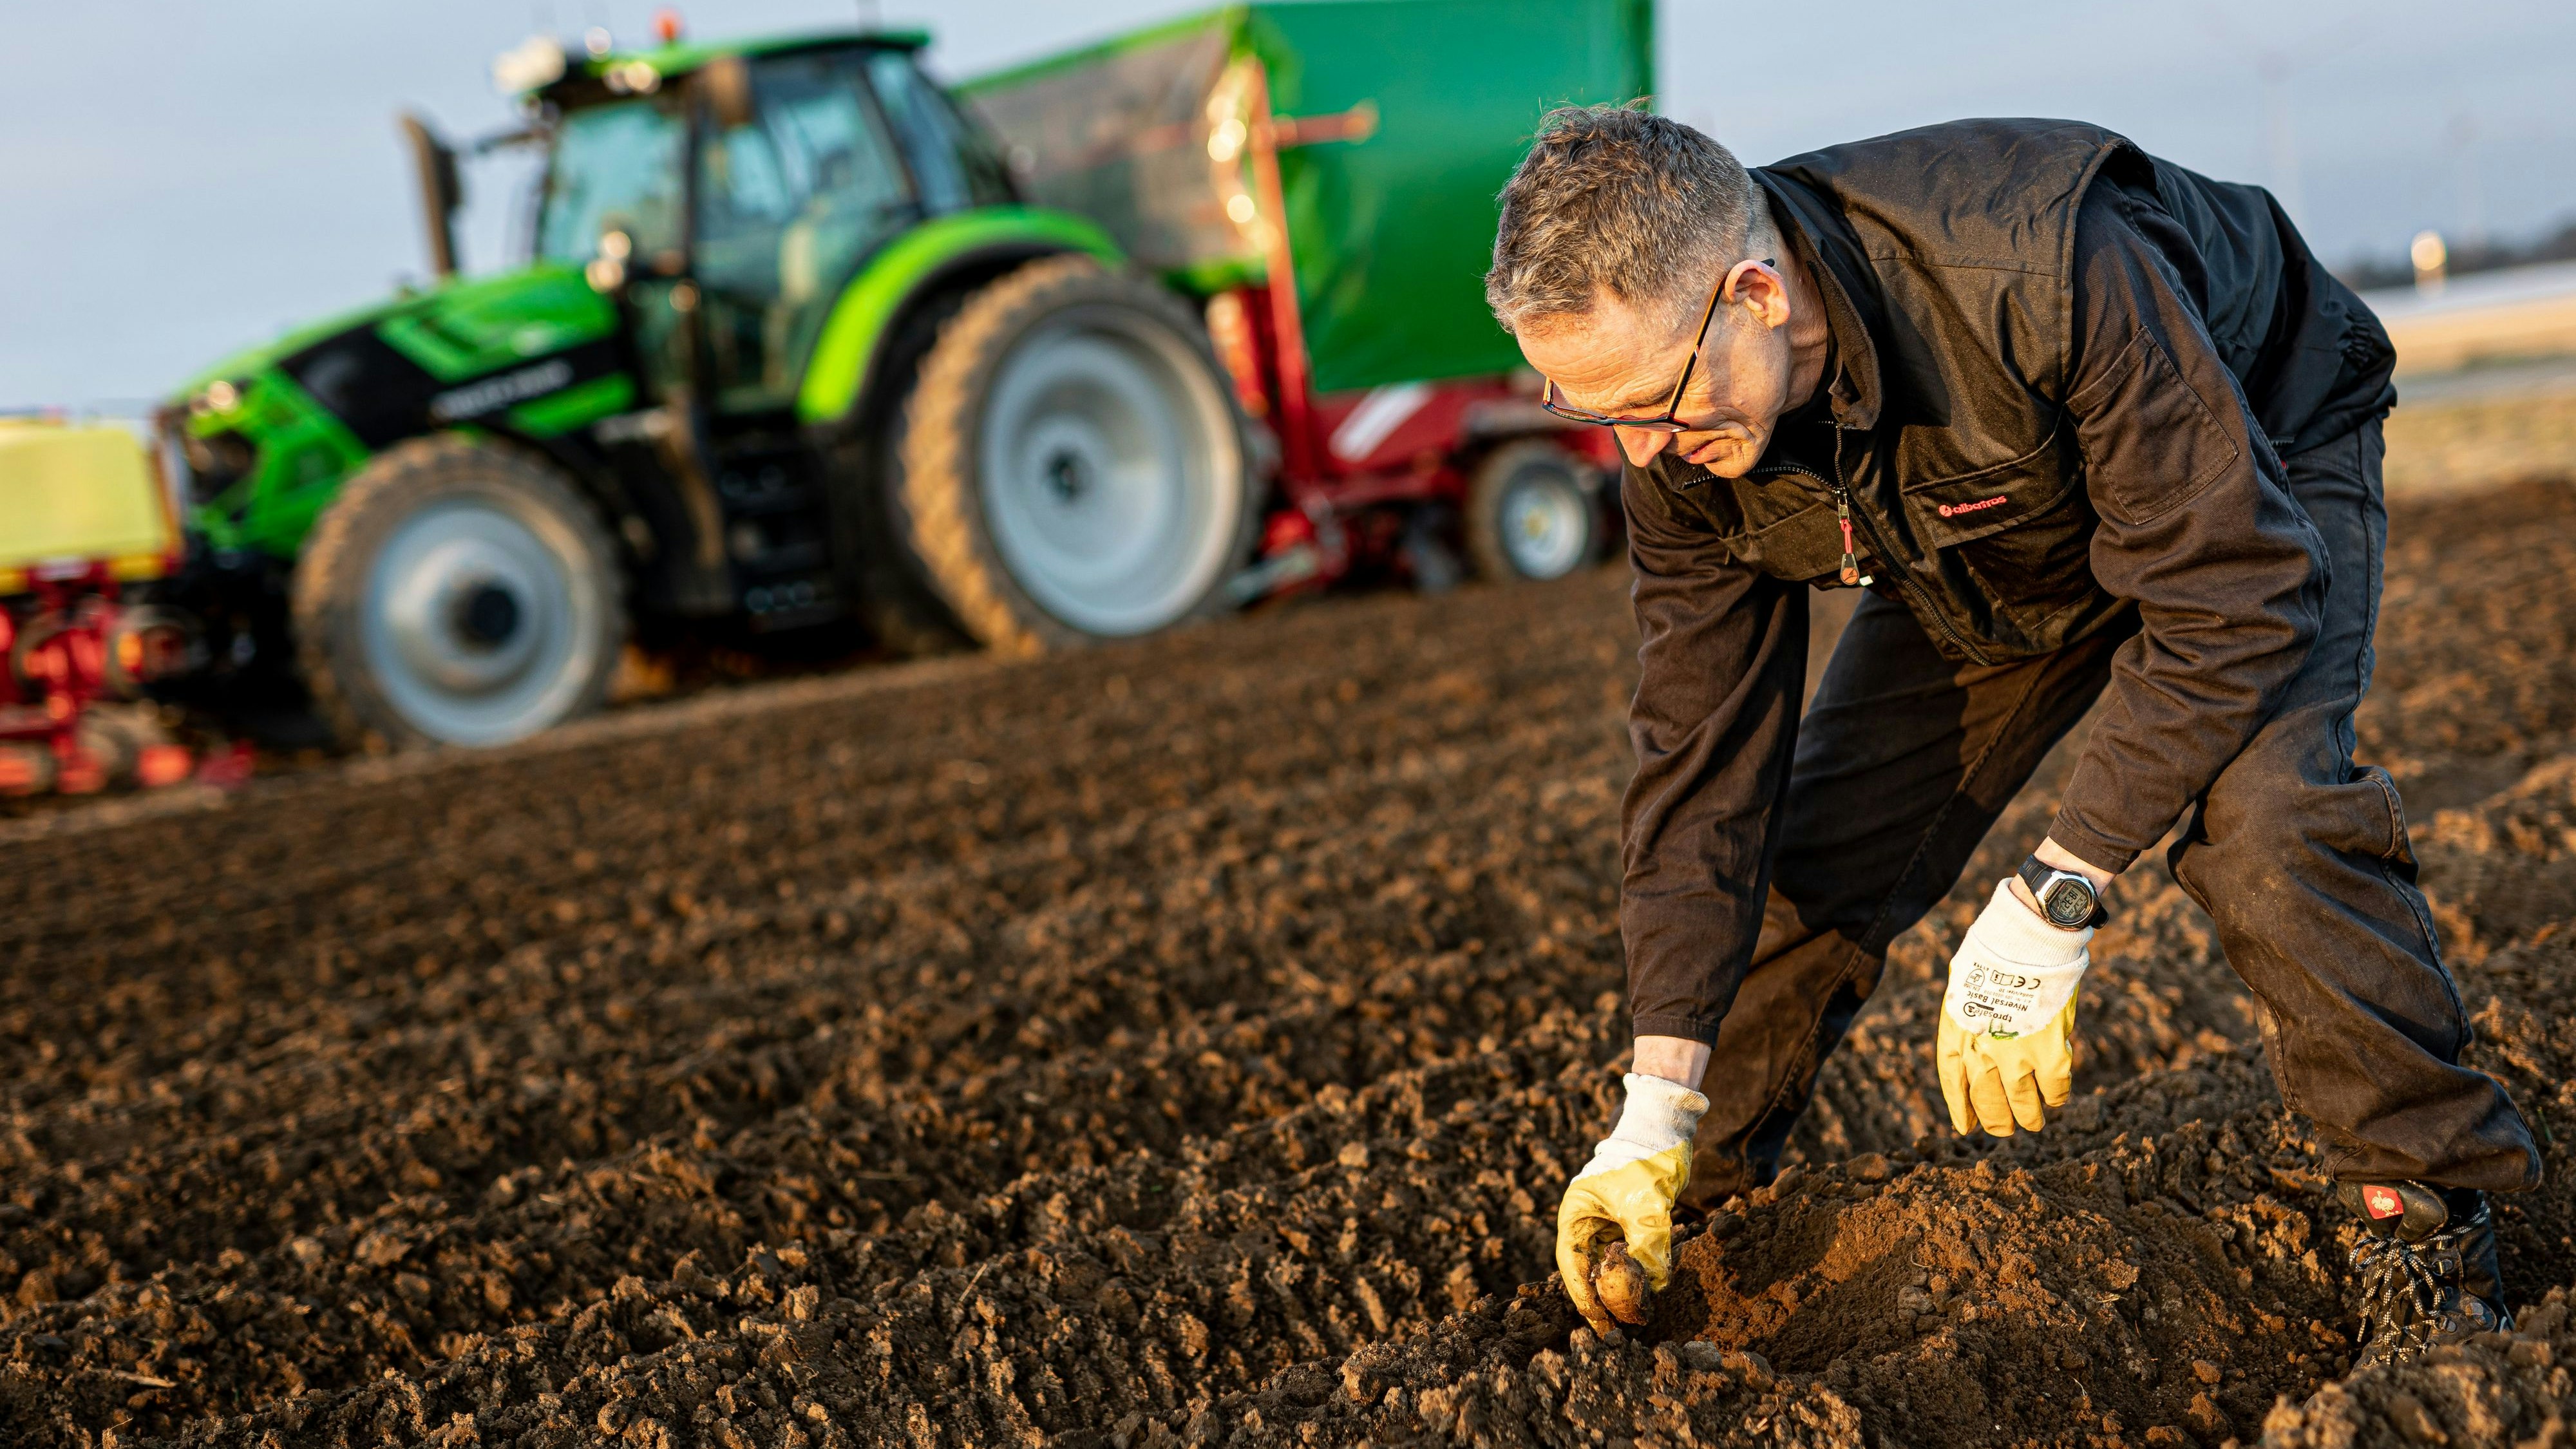 Landwirt Carsten Fricke zeigt auf einem Feld in der Region Hannover eine vorgekeimte Kartoffel zum Setzen. Die ersten Landwirte in Niedersachsen haben mit dem Pflanzen von Frühkartoffeln begonnen. Foto: dpa/Frankenberg